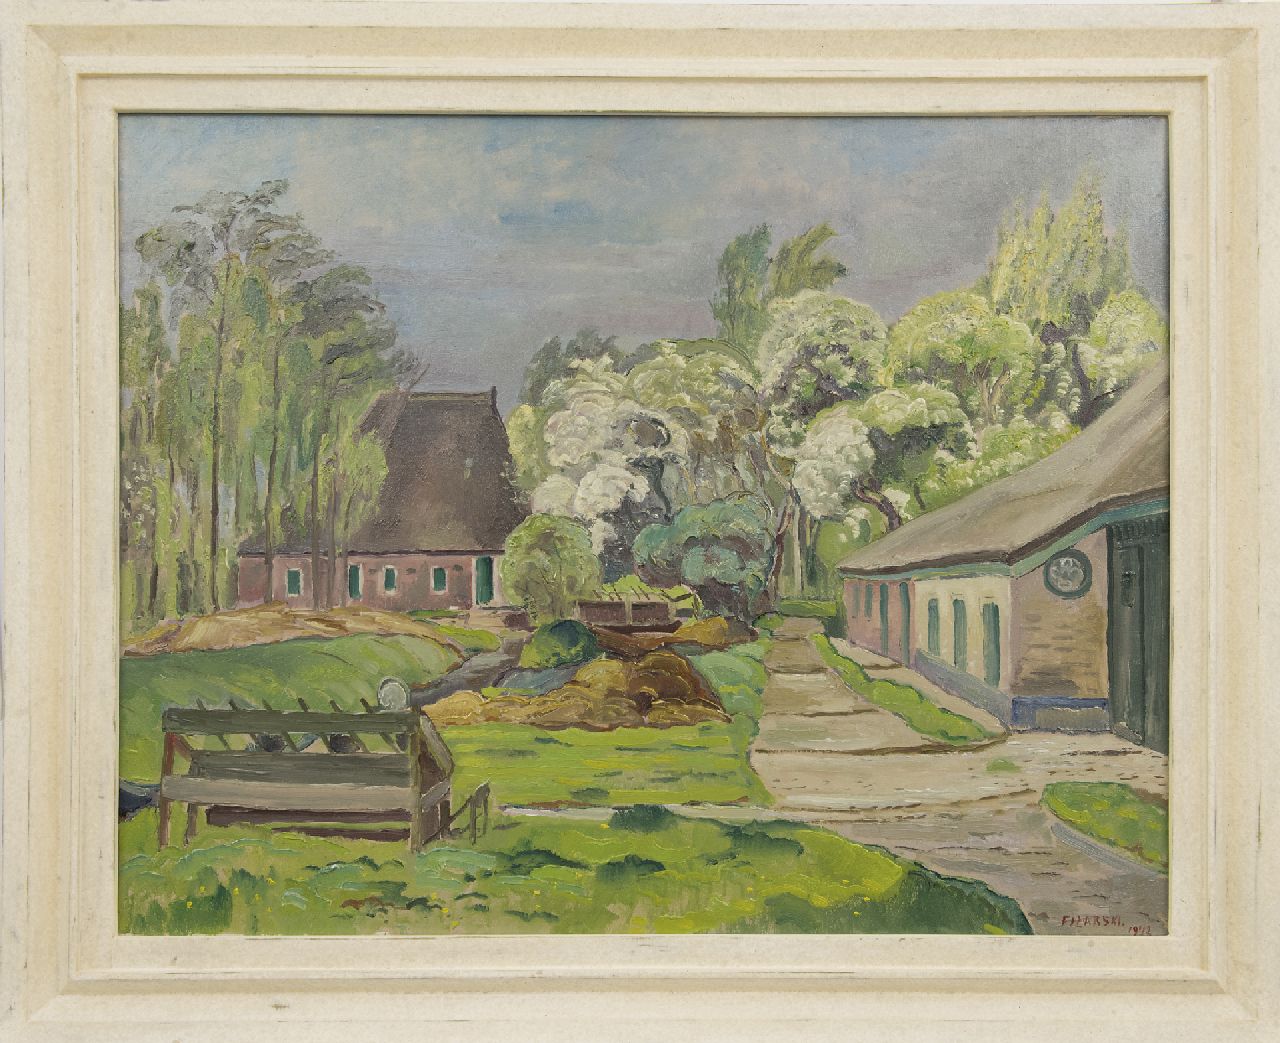 Filarski D.H.W.  | 'Dirk' Herman Willem Filarski | Gemälde zum Verkauf angeboten | Bauernhöfe, Öl auf Leinwand 80,0 x 100,5 cm, Unterzeichnet r.u. und datiert 1942